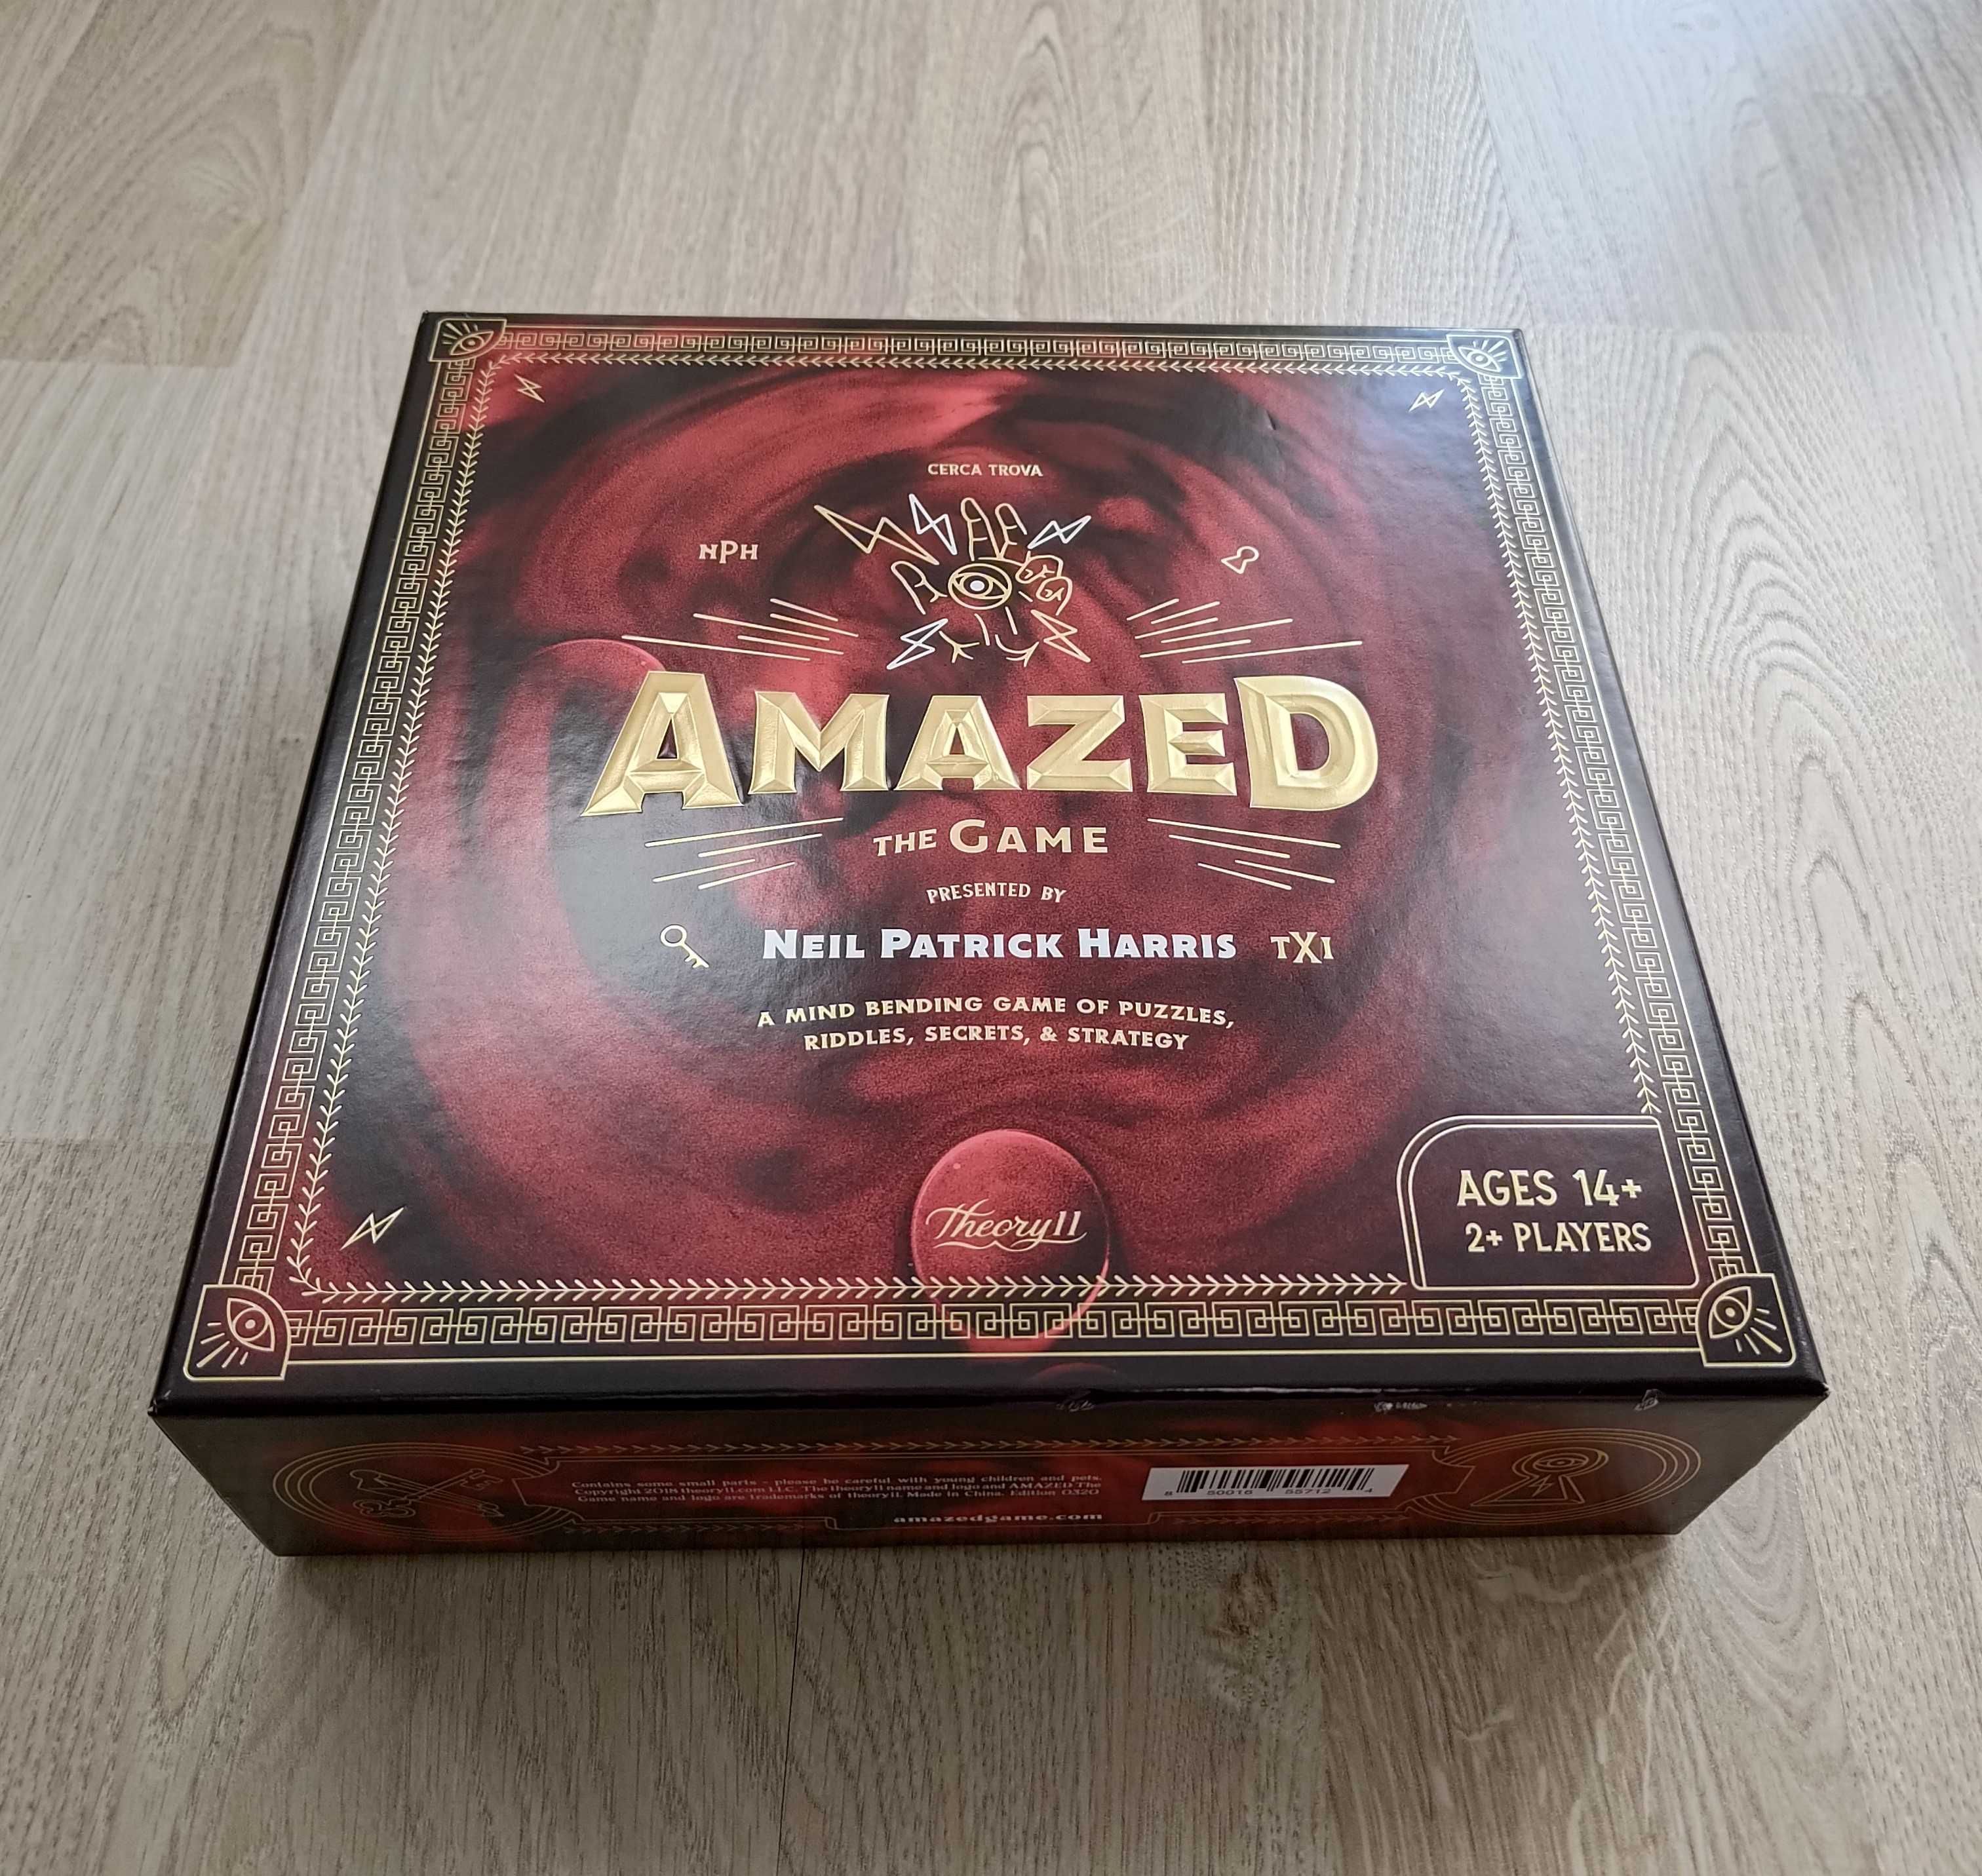 Amazed - Board Game by Neil Patrick Harris - gra planszowa